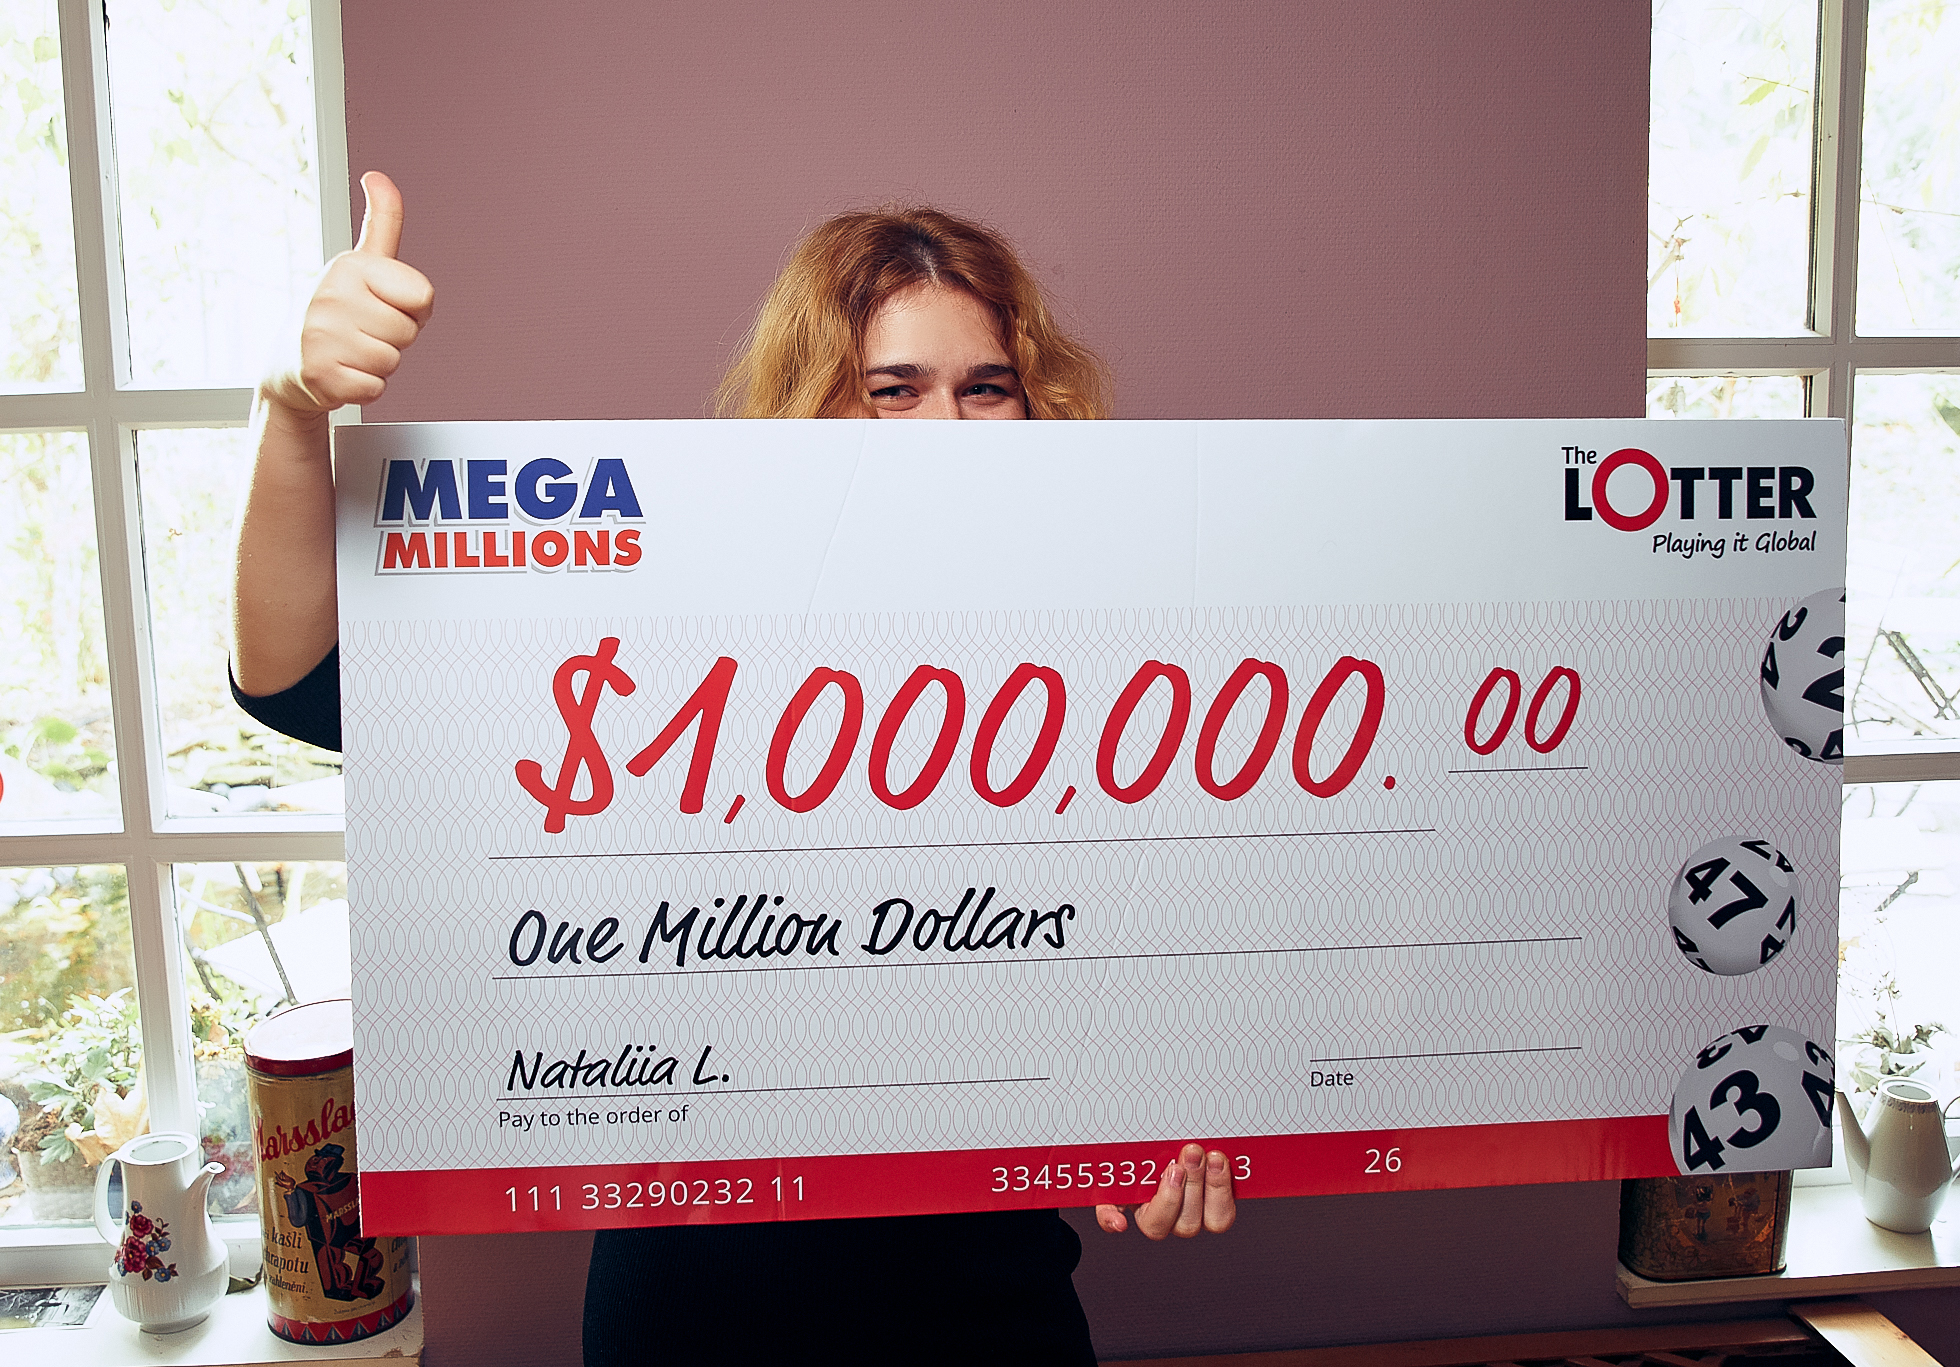 Recentemente, uma jogadora ucraniana chamada Nataliia L. ganhou um prêmio de US$ 1 milhão jogando na Mega Millions através da TheLotter